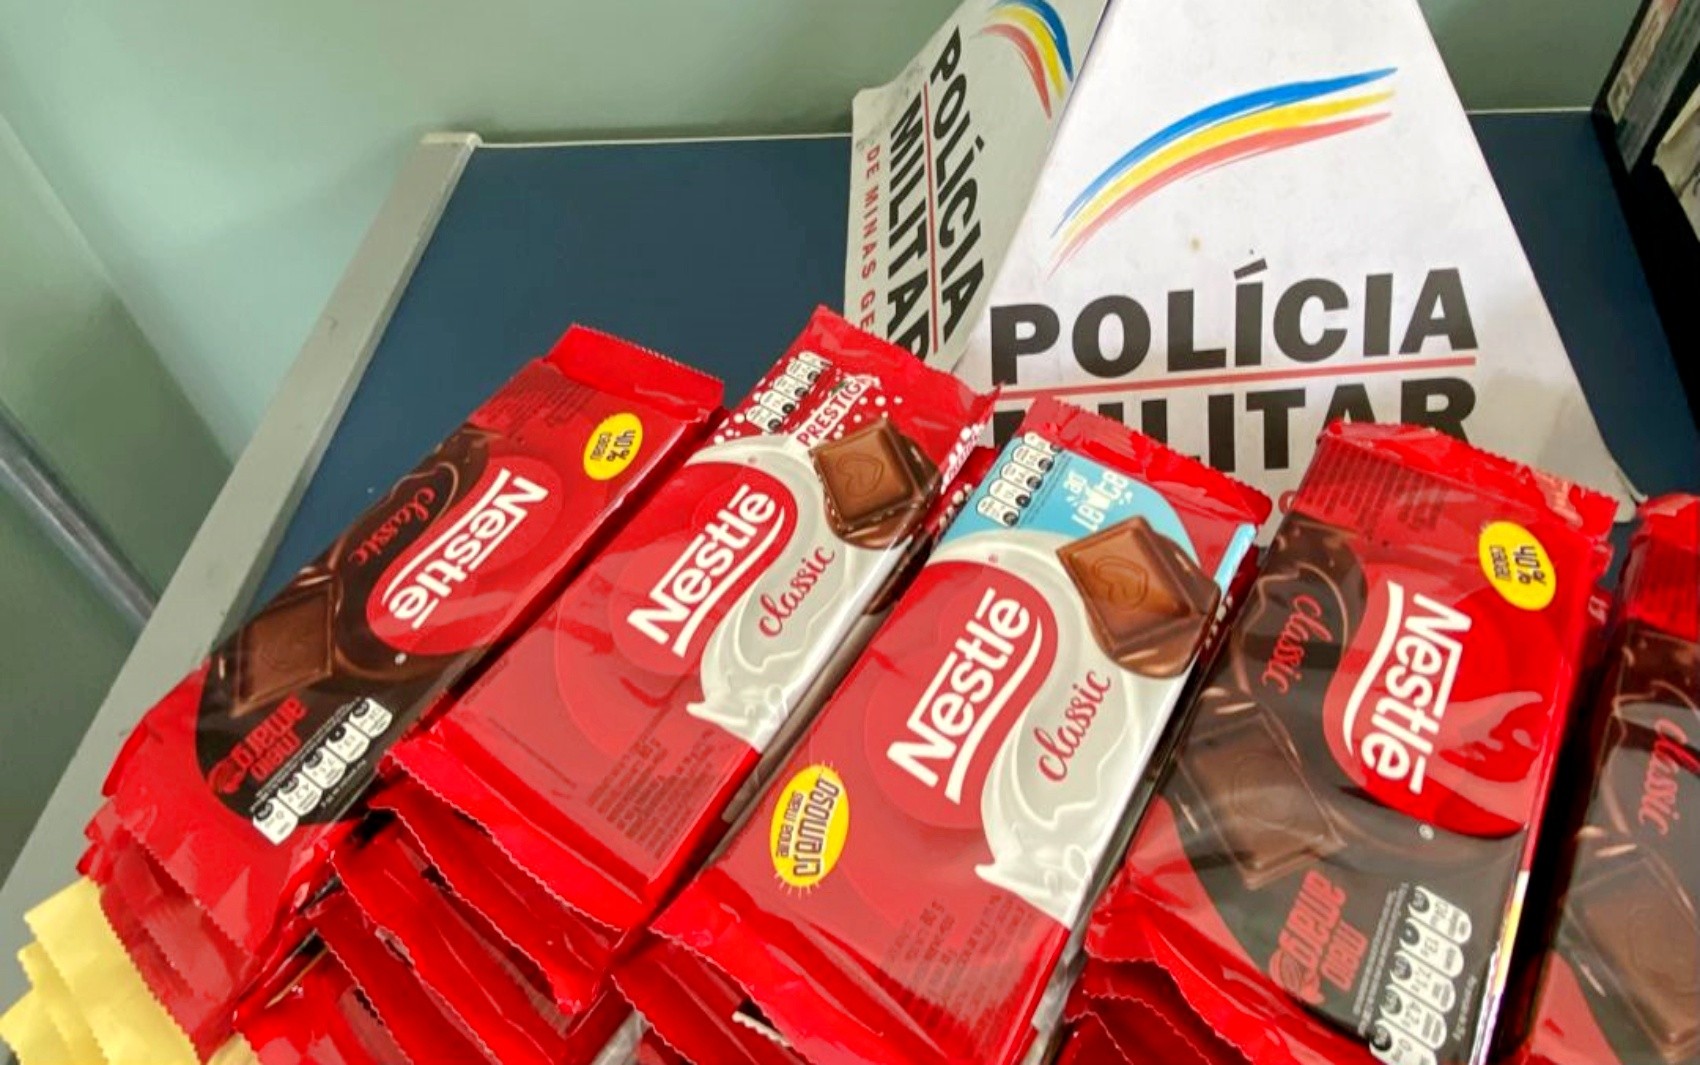 Homem é preso após furtar 49 barras de chocolate em supermercado de Poços de Caldas, MG